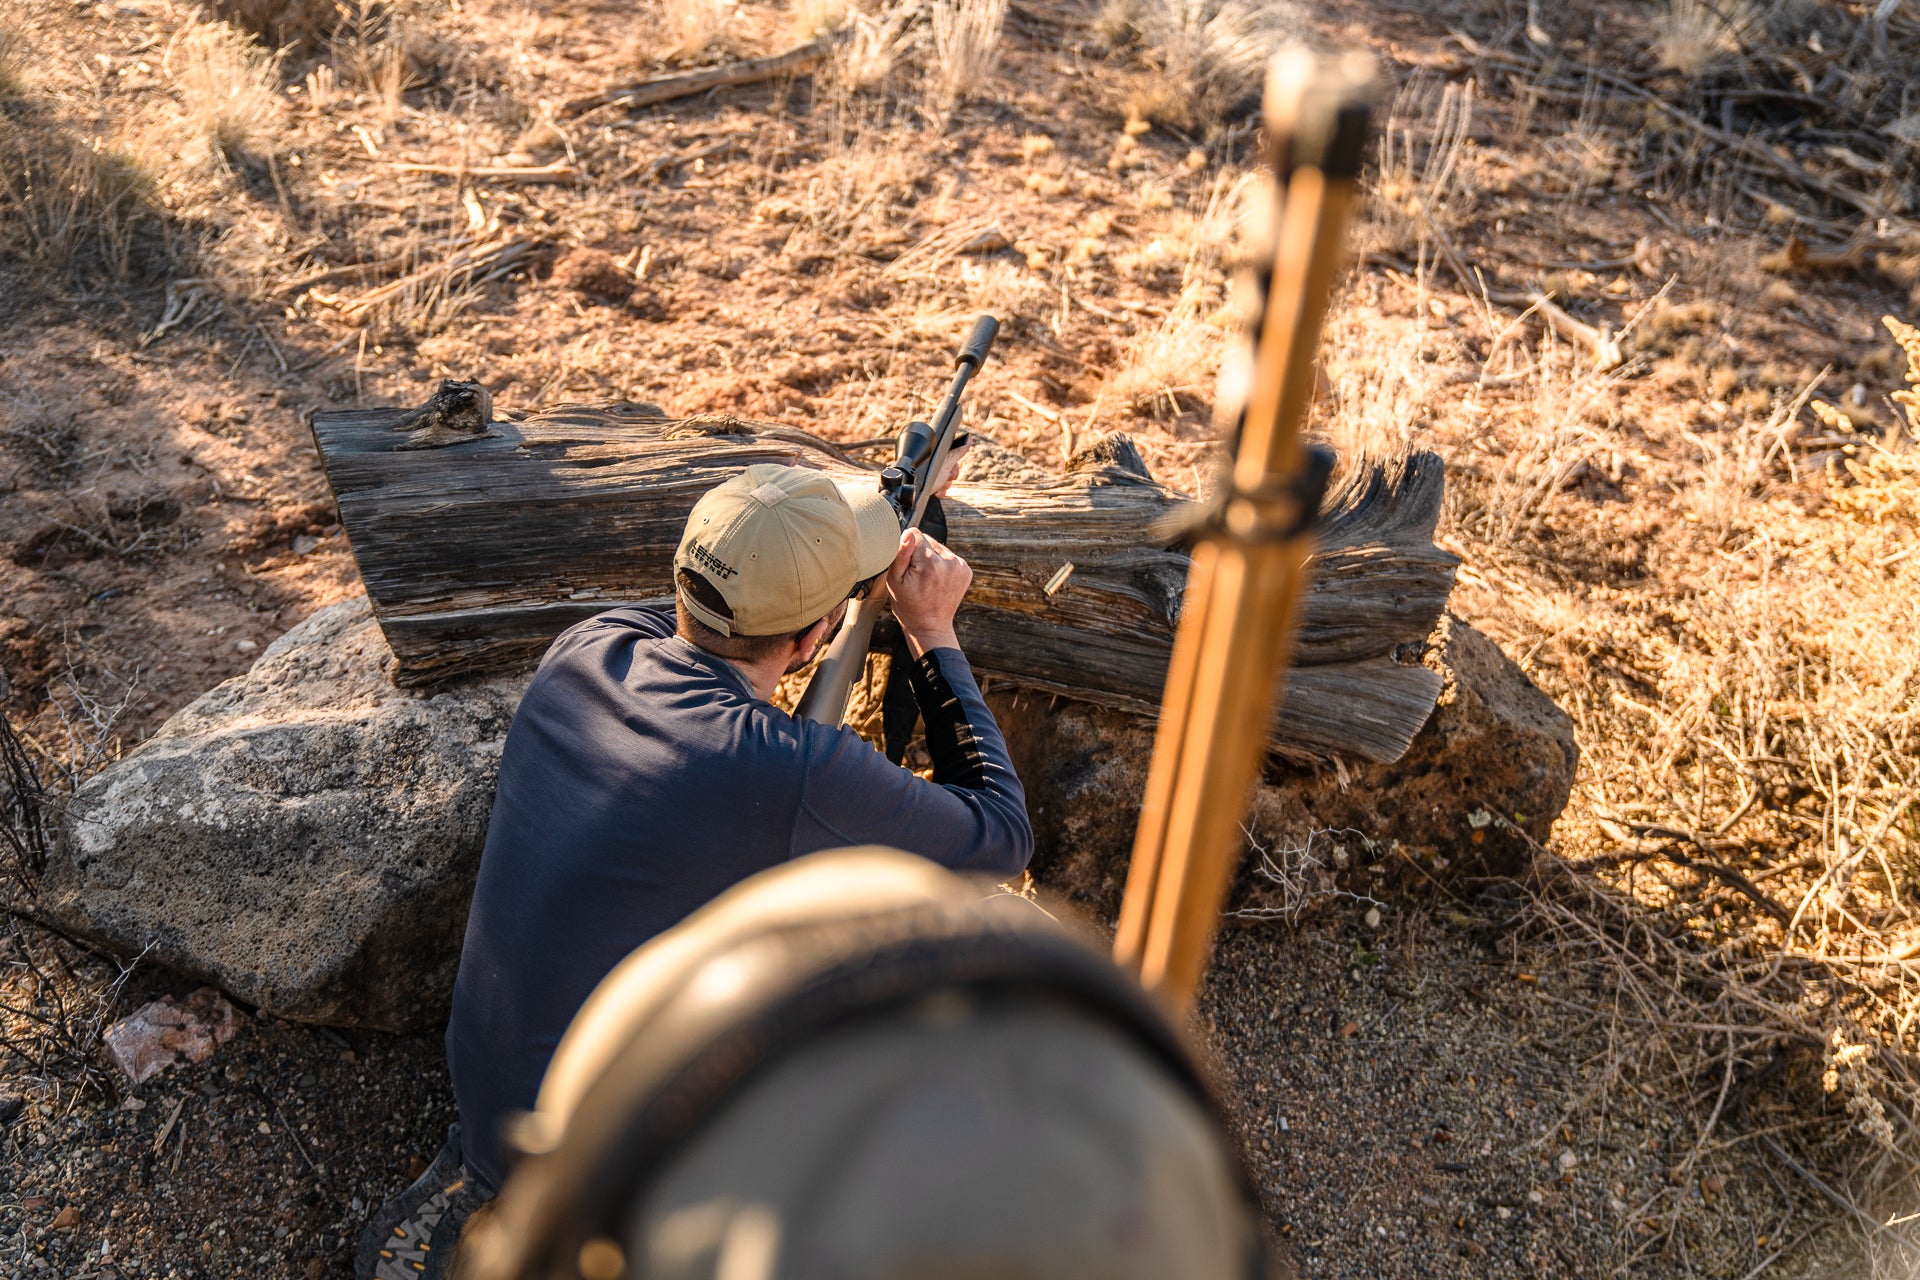 Above view of a shooter firing a rifle from a barricade at a gun range. 